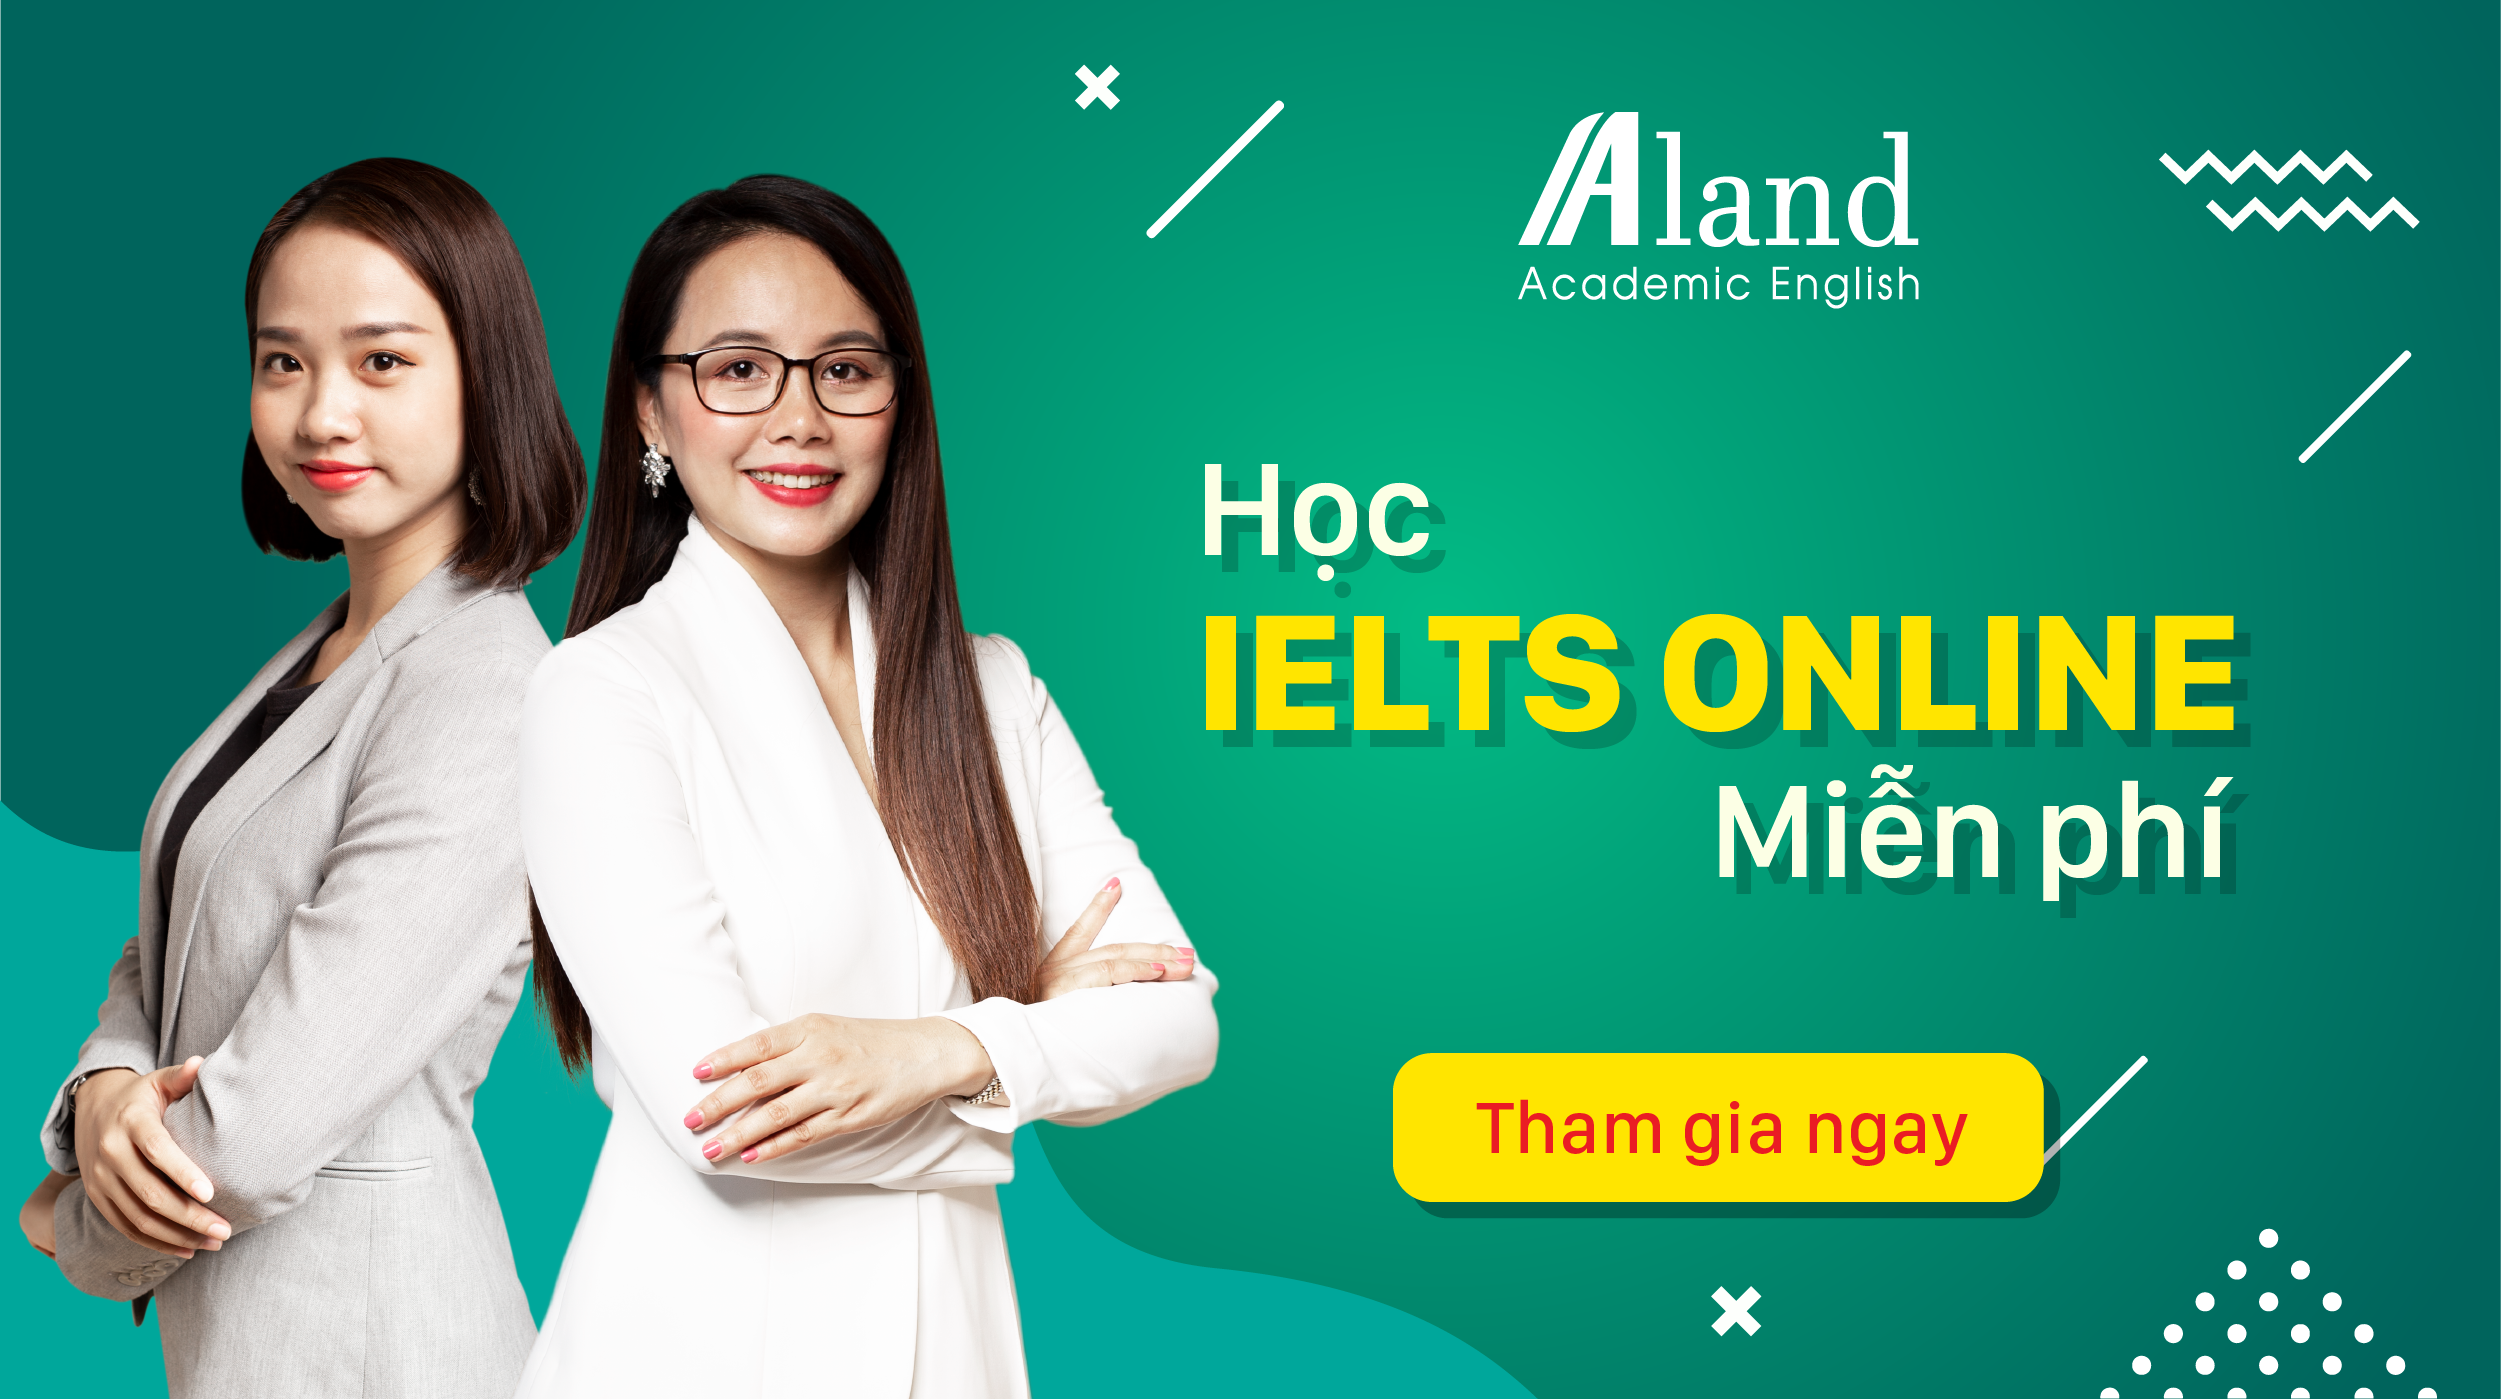 Khóa học Ielts online hoàn toàn miễn phí cùng với giảng viên Ms Hoa